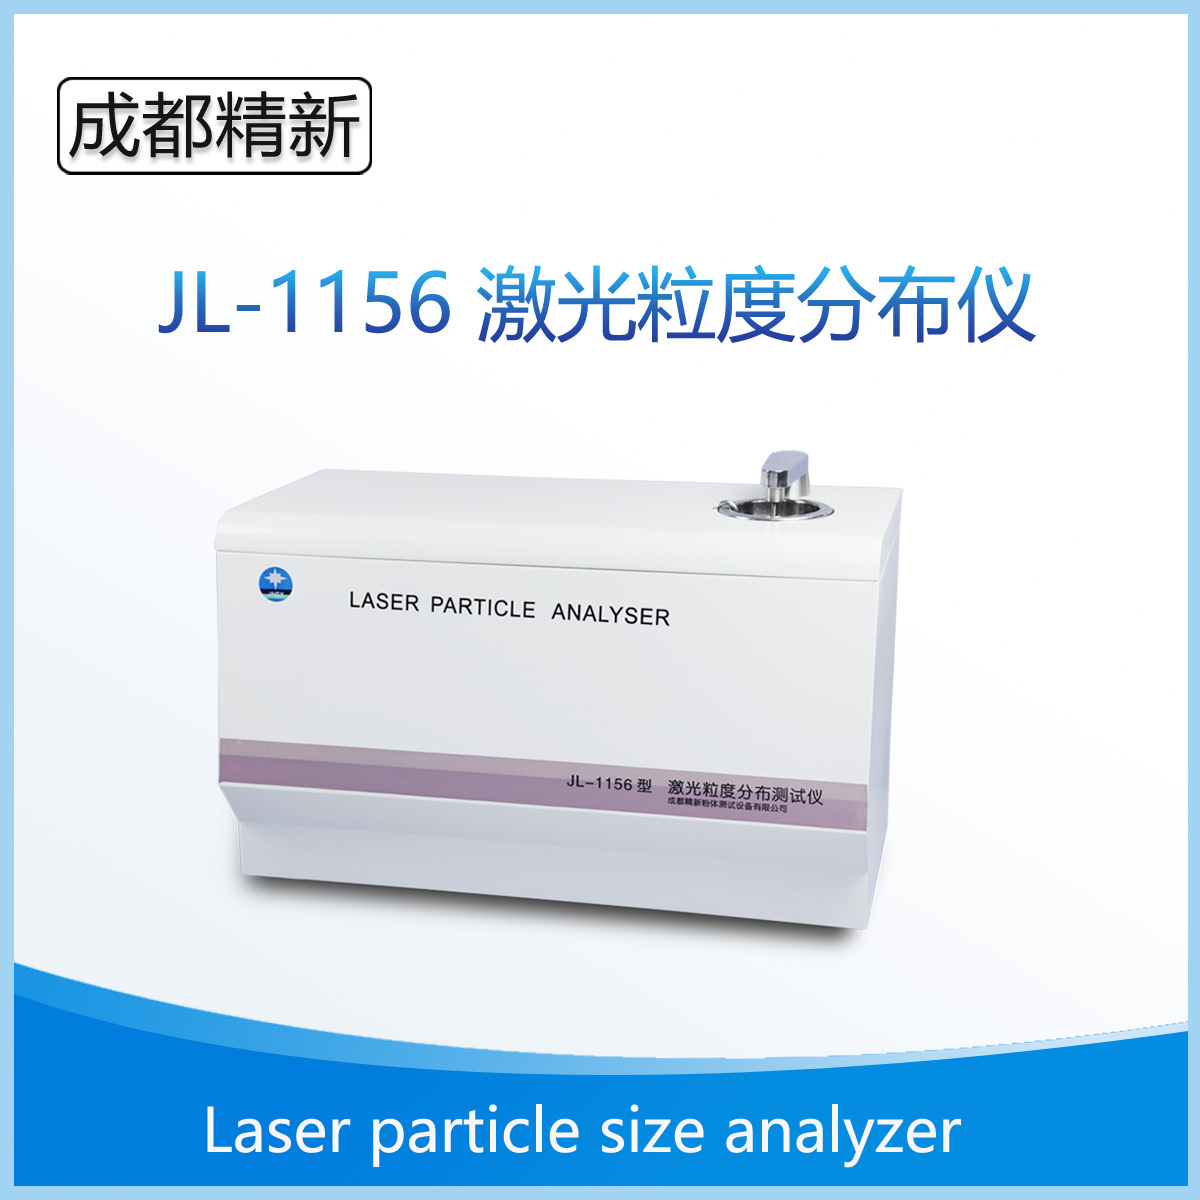 成都精新-JL-1156 湿法激光粒度分析仪